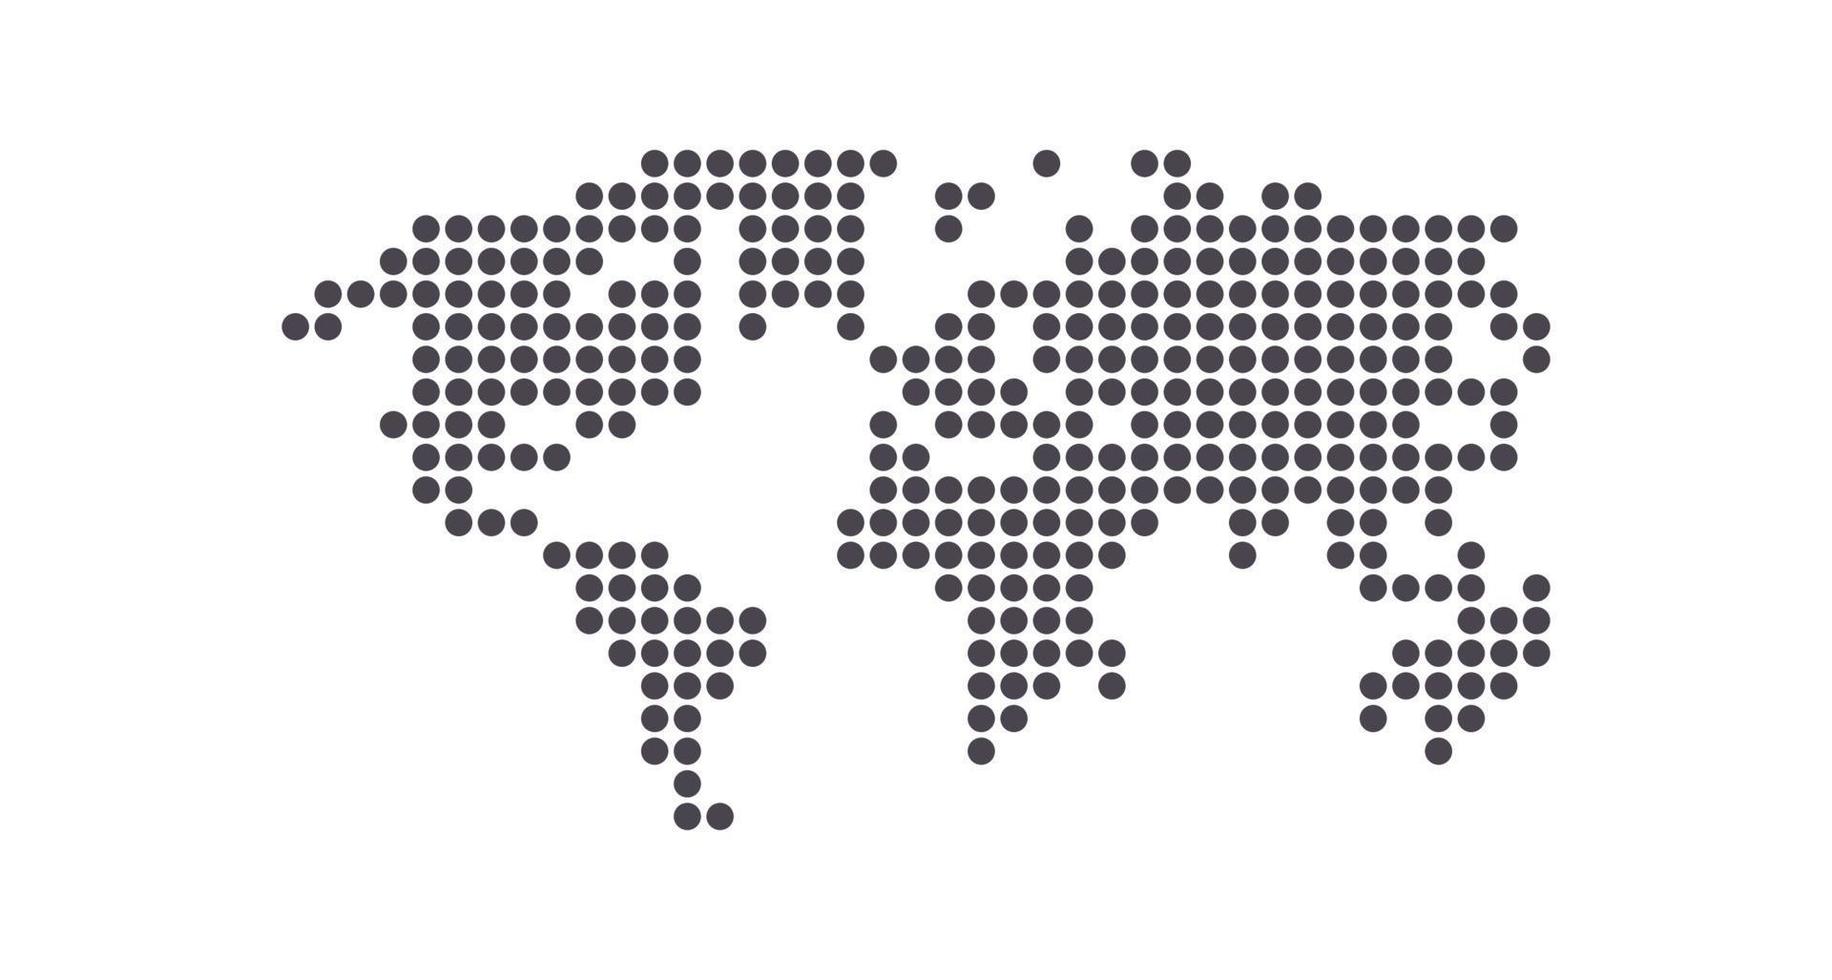 aarde wereldbol wereld kaart van dots en globaal aardrijkskunde in stippel patroon vlak vector illustratie.